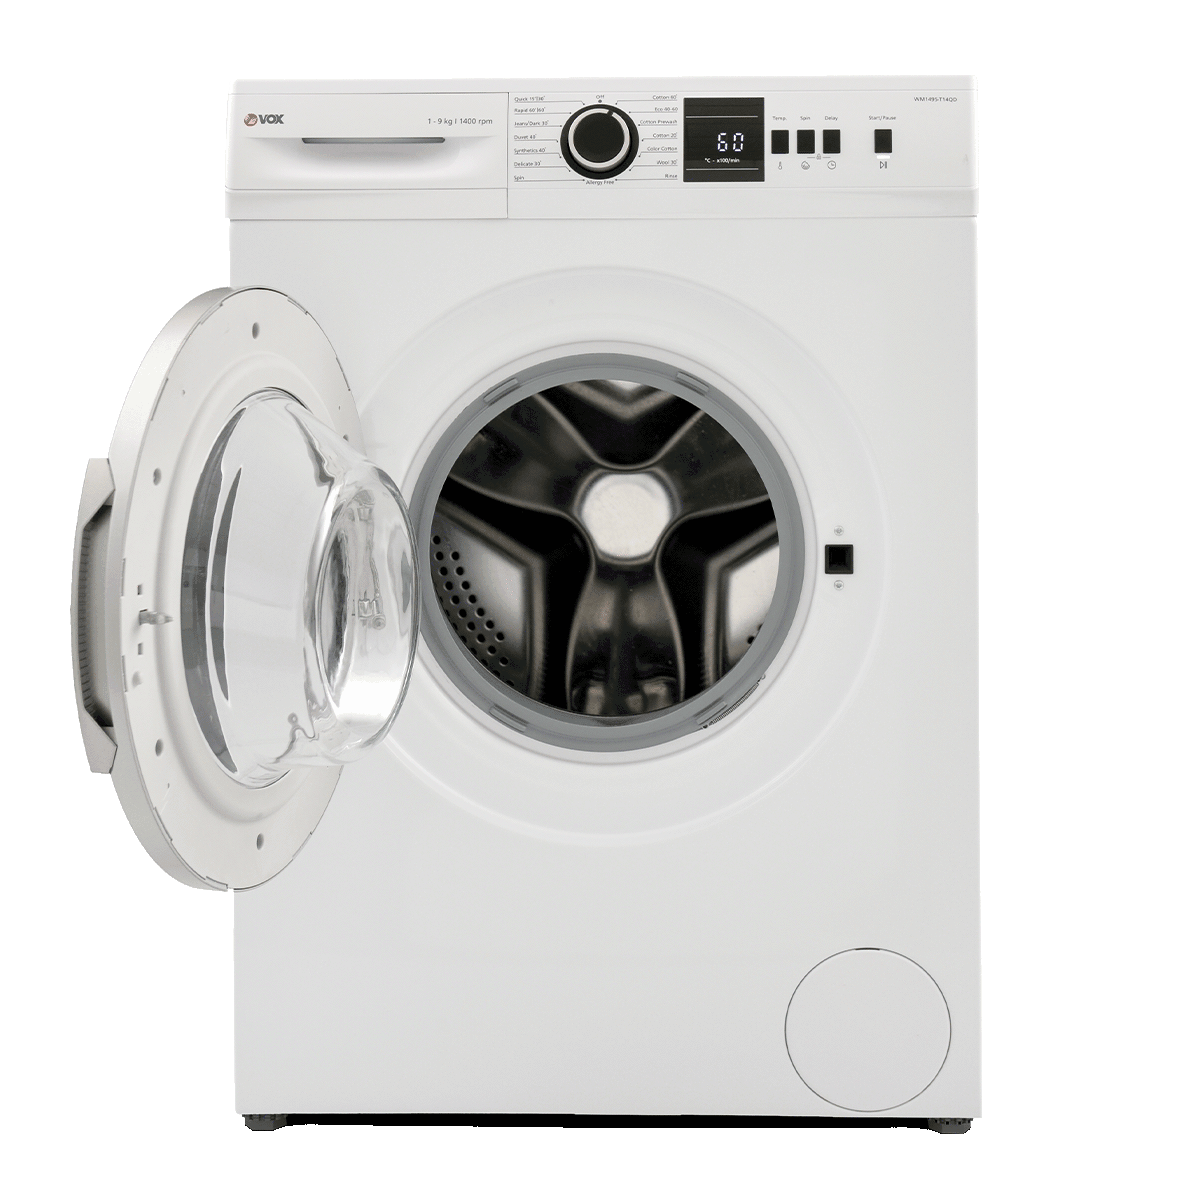 Машина за перење алишта WM1495-T14QD 